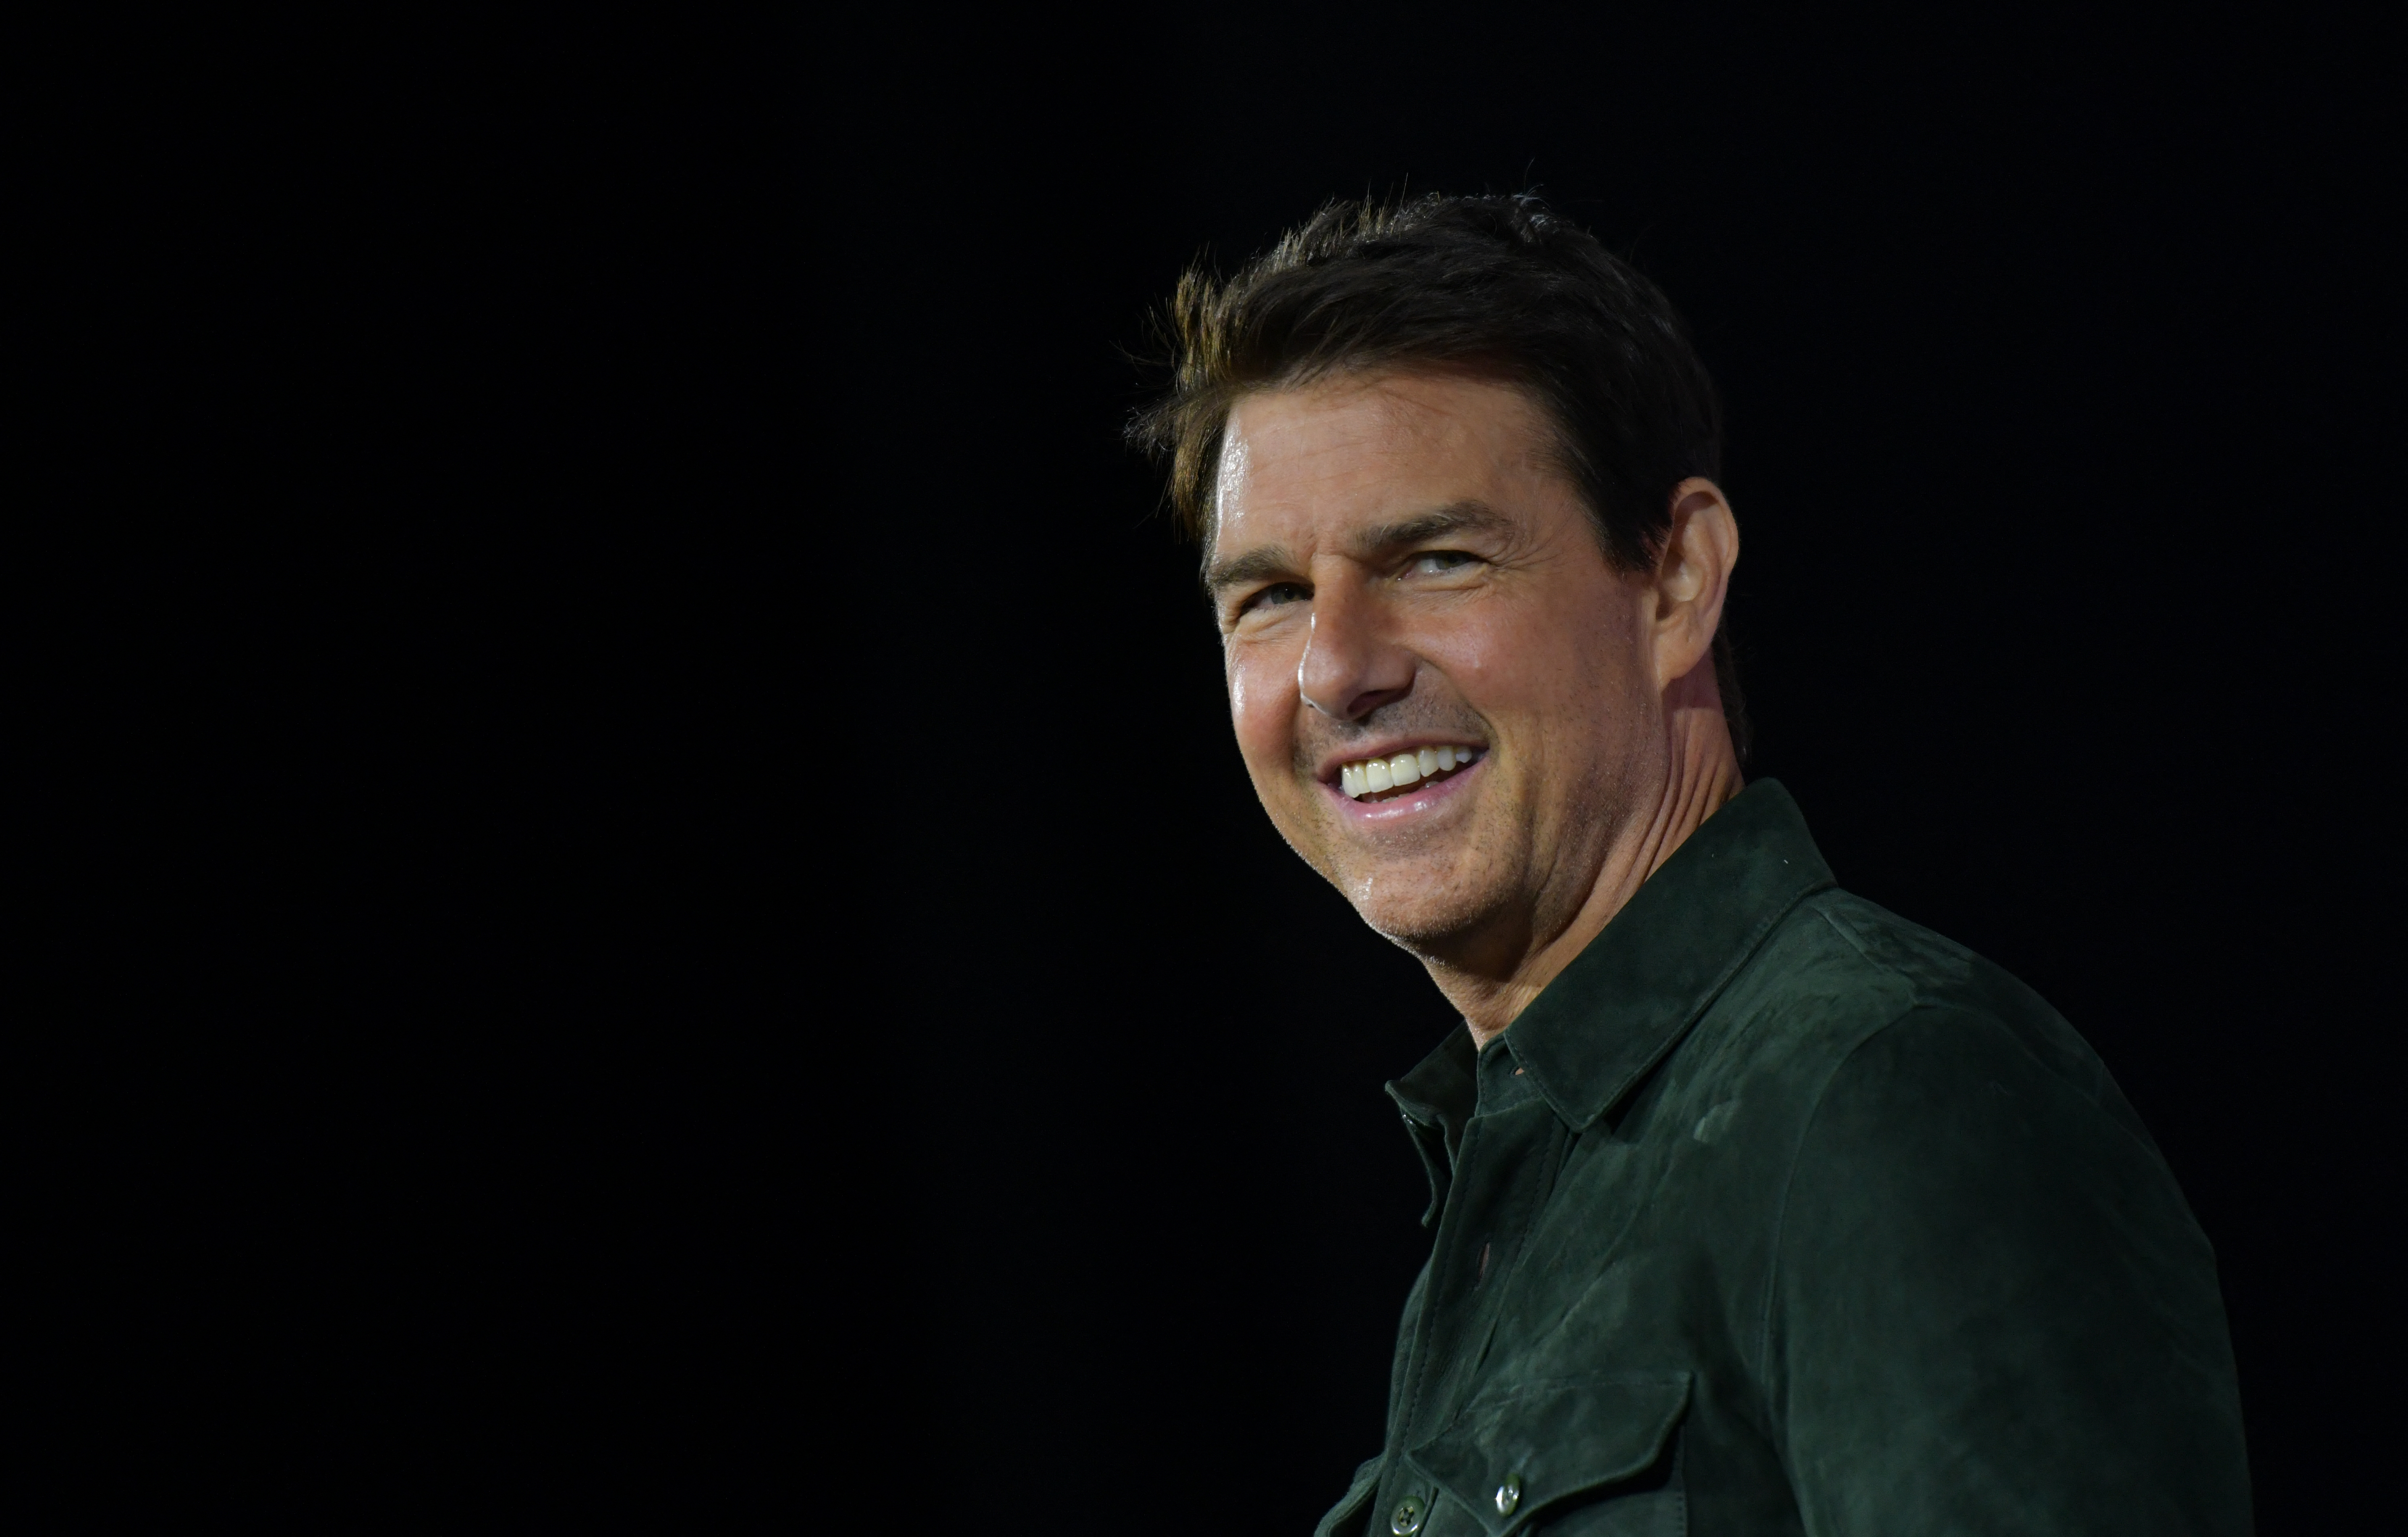 Tom Cruise bei der Werbung für "Top Gun: Maverick" im Convention Center während der Comic Con in San Diego, Kalifornien am 18. Juli 2019 | Quelle: Getty Images